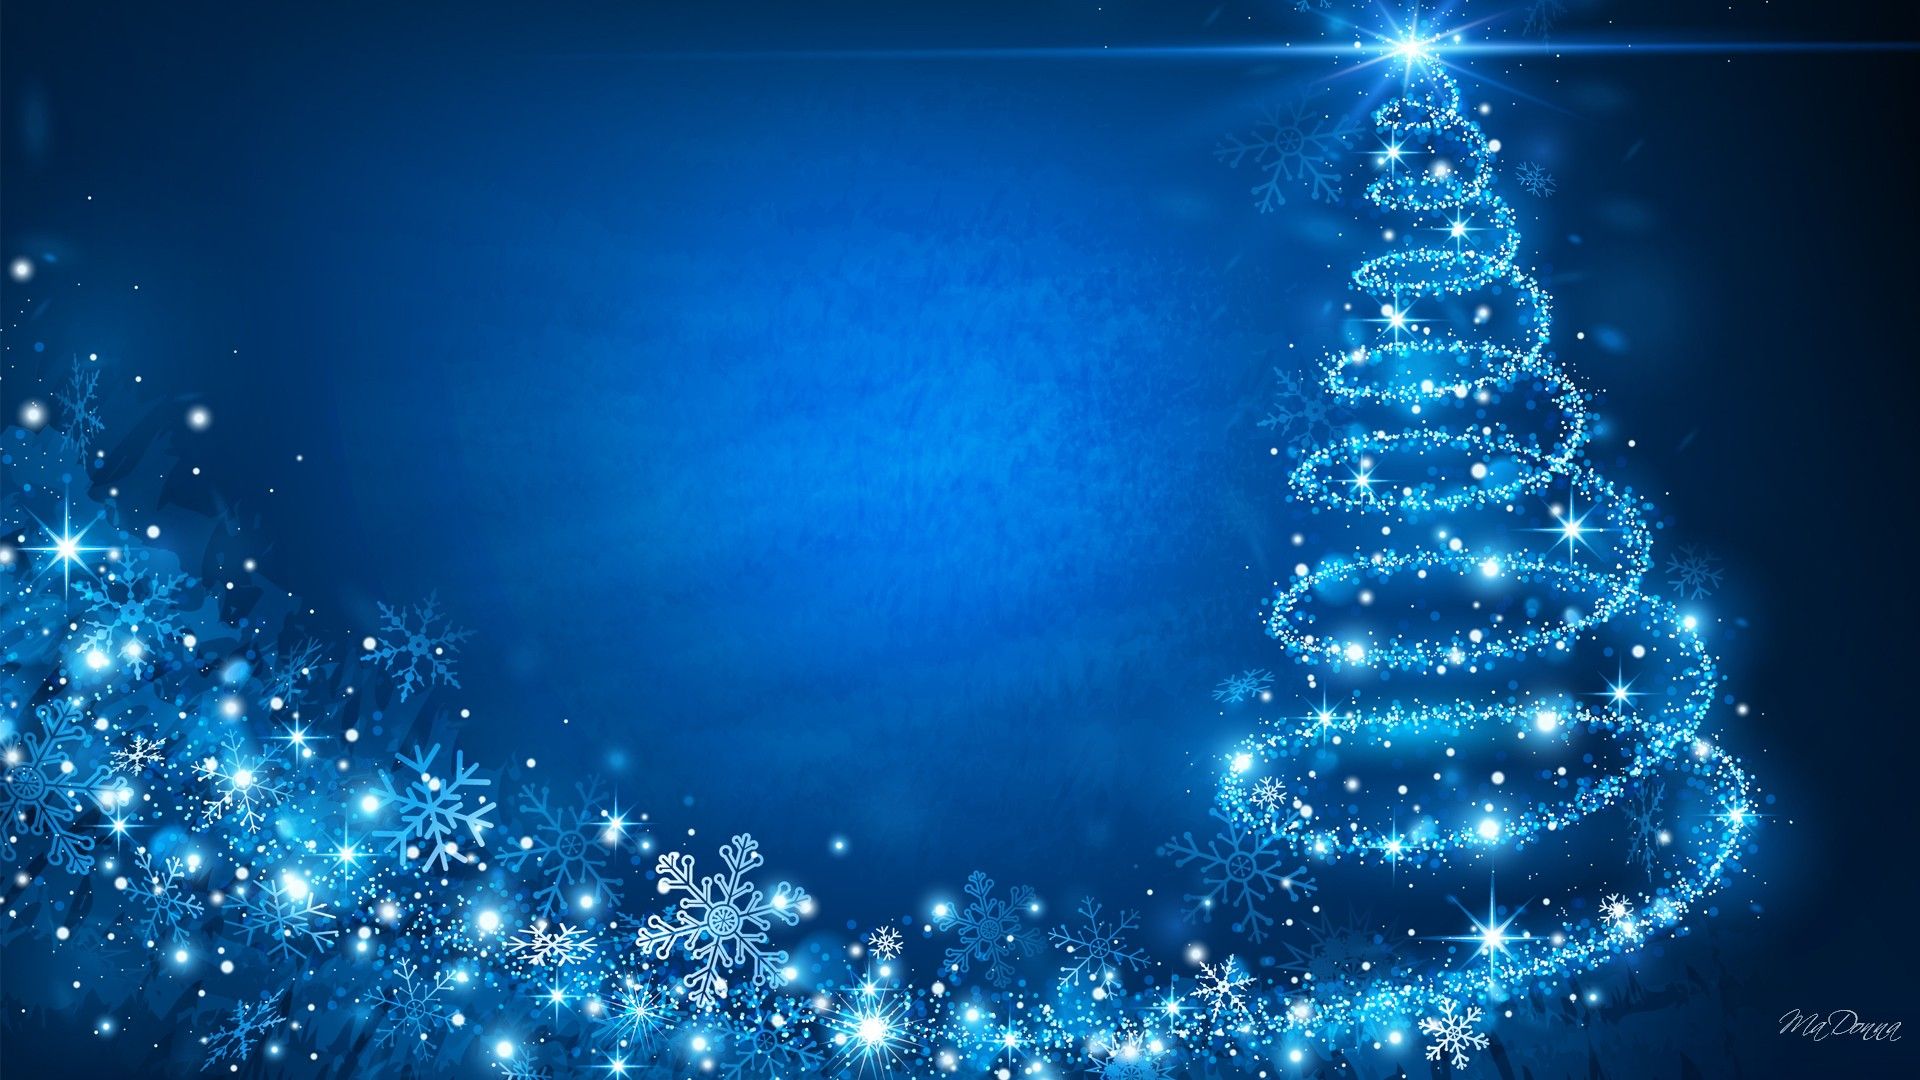 Khám phá không gian Giáng Sinh màu xanh tinh tế với bộ sưu tập hình nền nền tuyệt đẹp. Nâng tầm trang trí cho desktop và làm tươi mới không khí cuối năm chỉ với vài cú click!